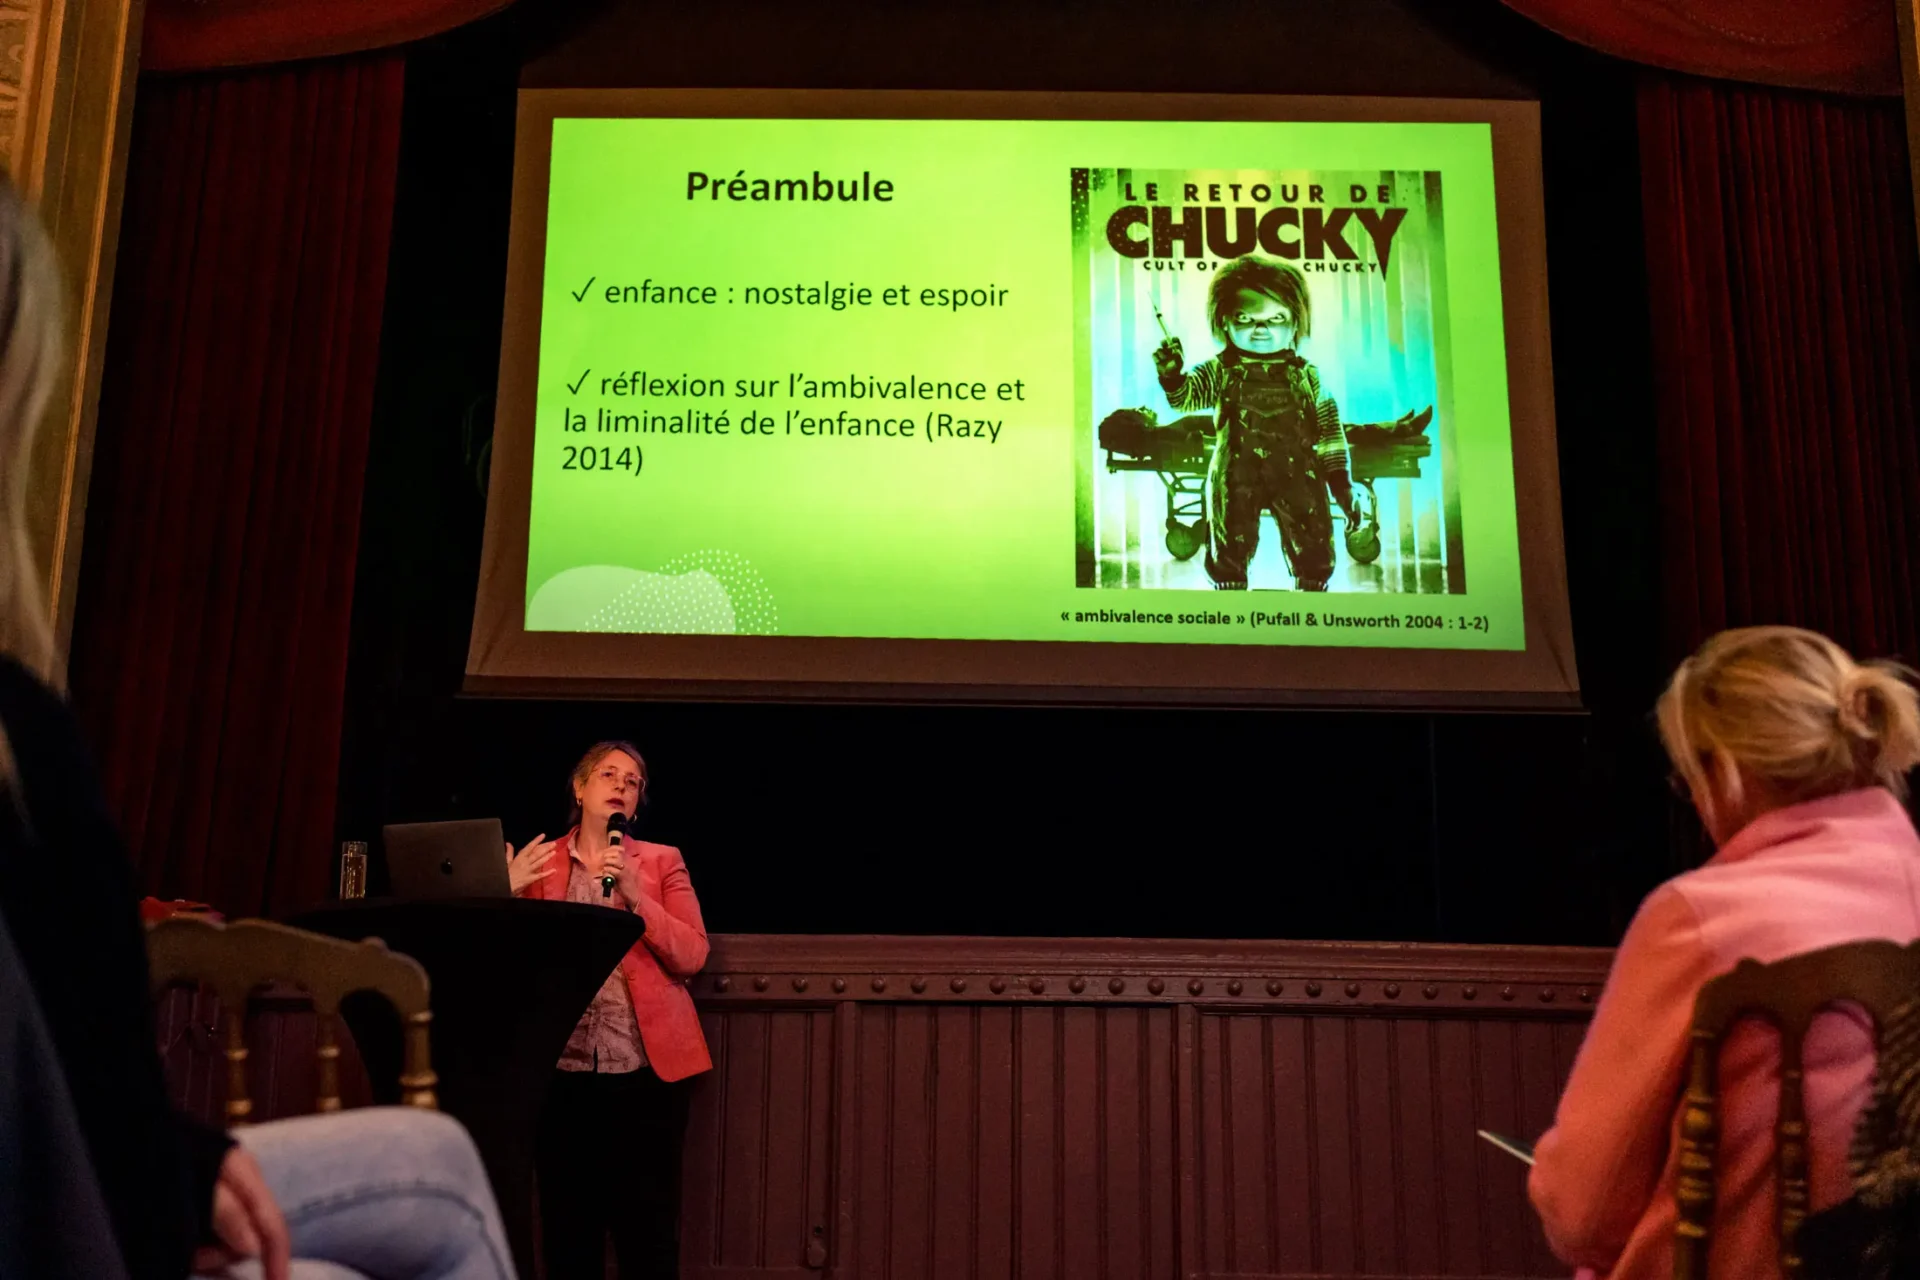 Une oratrice présente une conférence avec une image de Chucky sur la toile